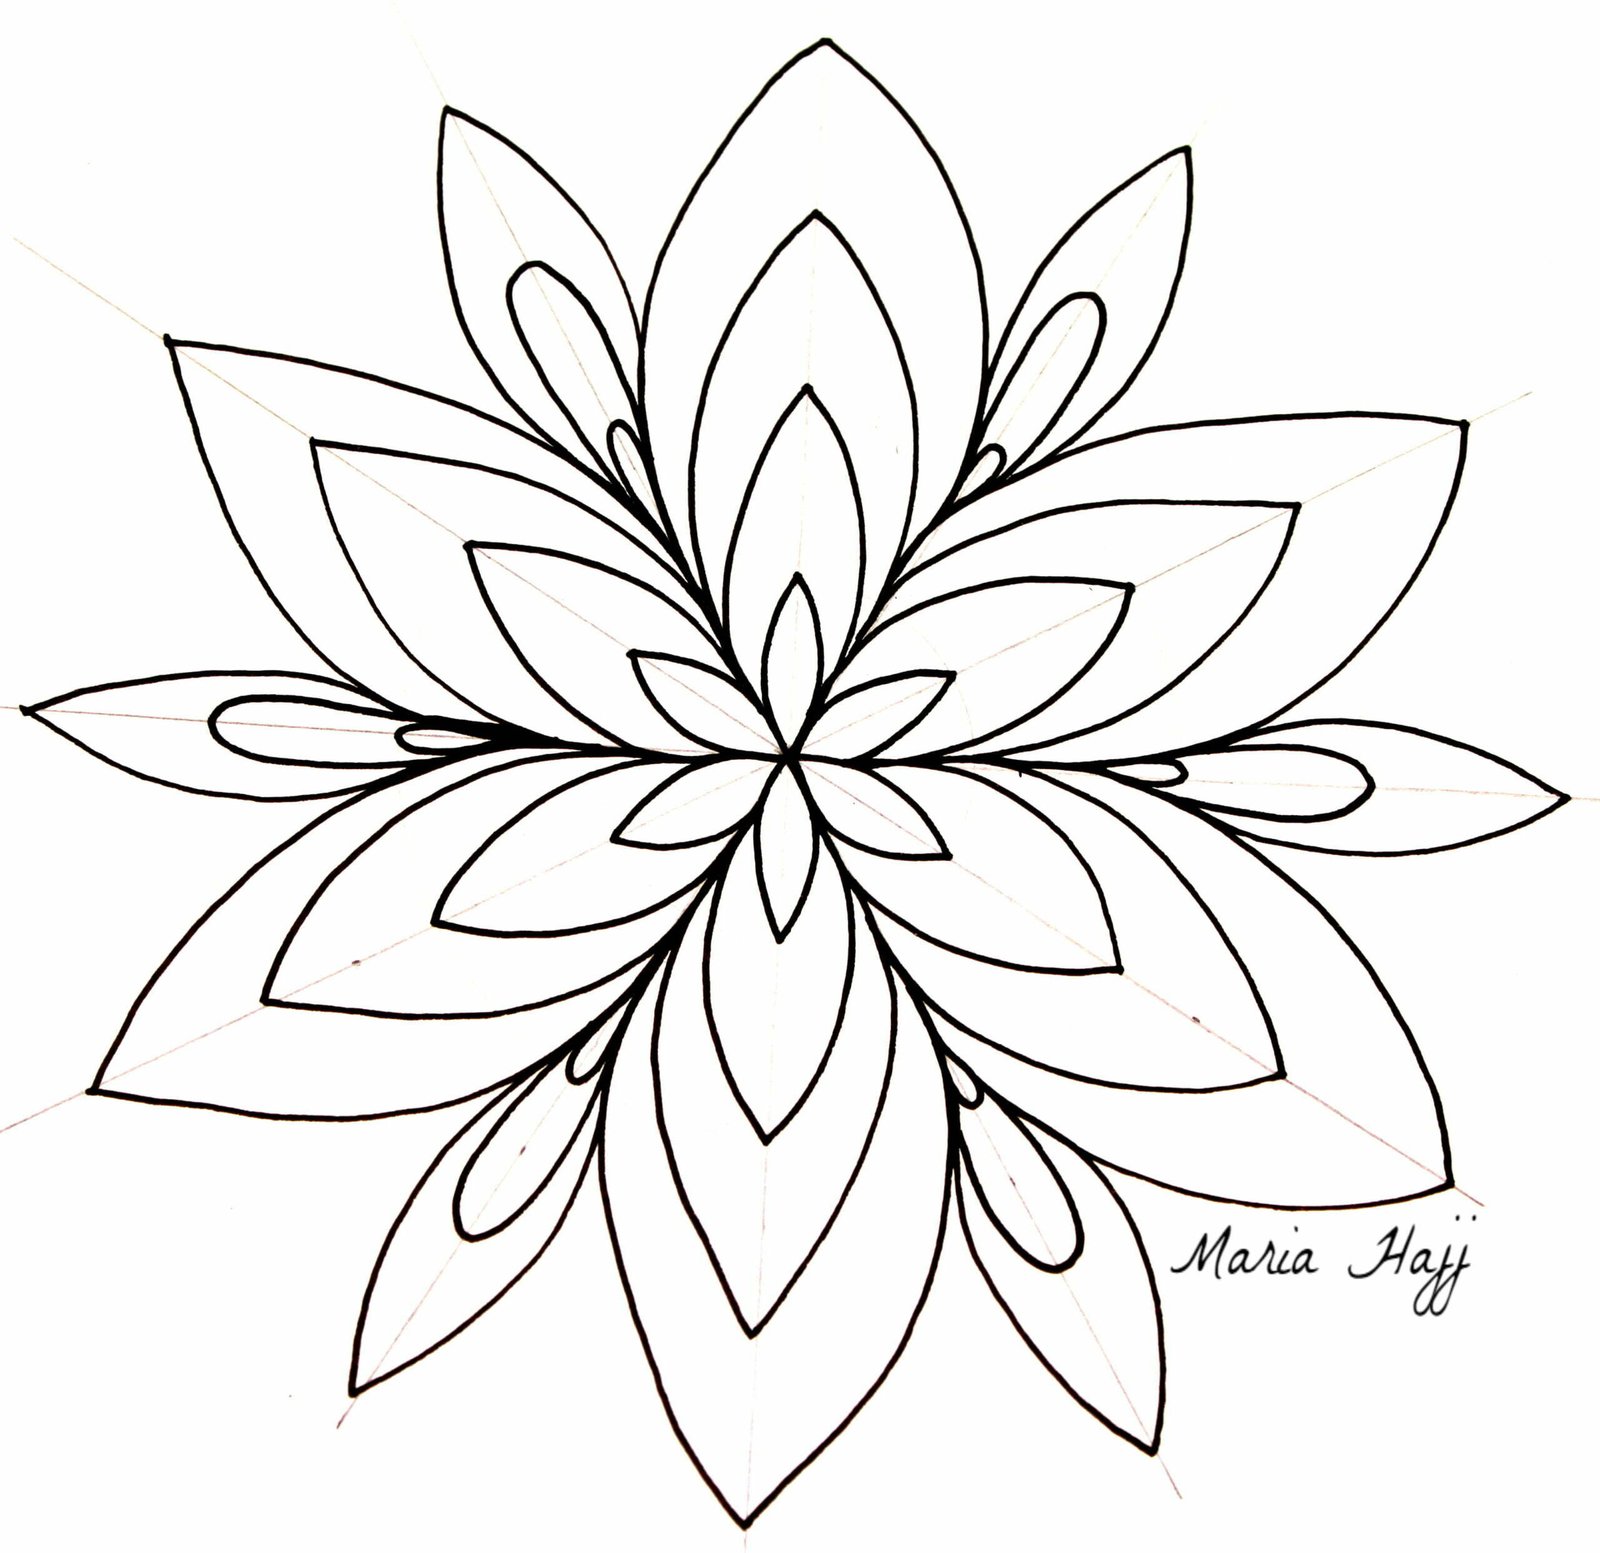 Mandala art by Payel : r/drawing-saigonsouth.com.vn